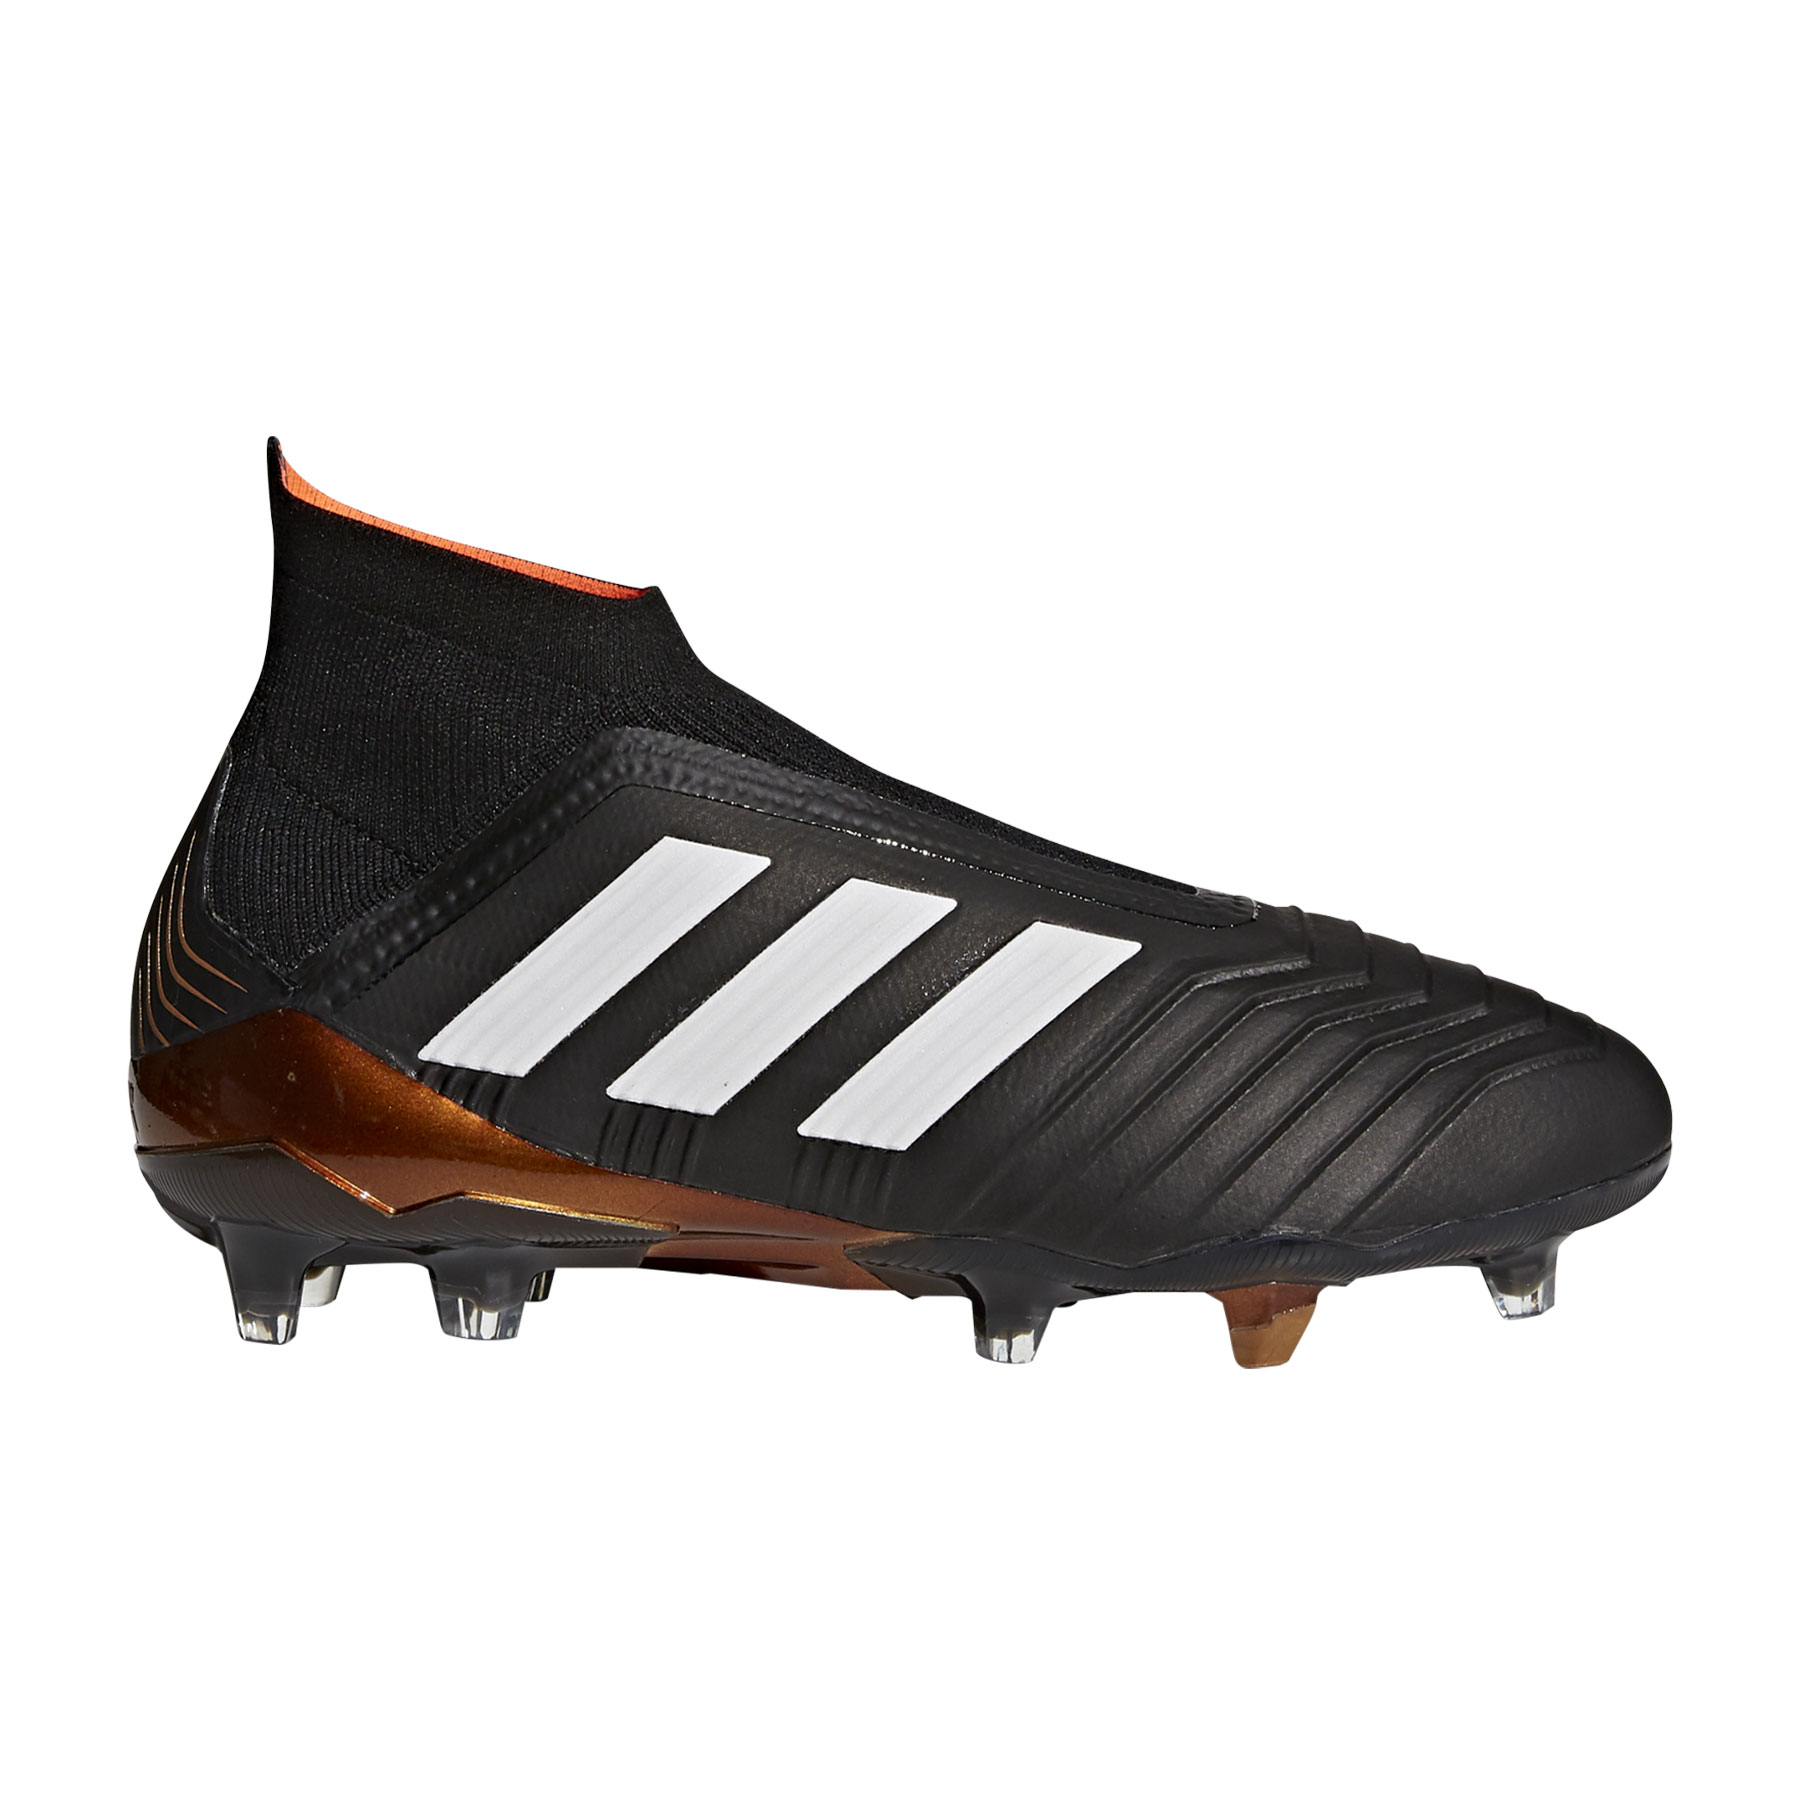 scarpe calcio adidas classiche